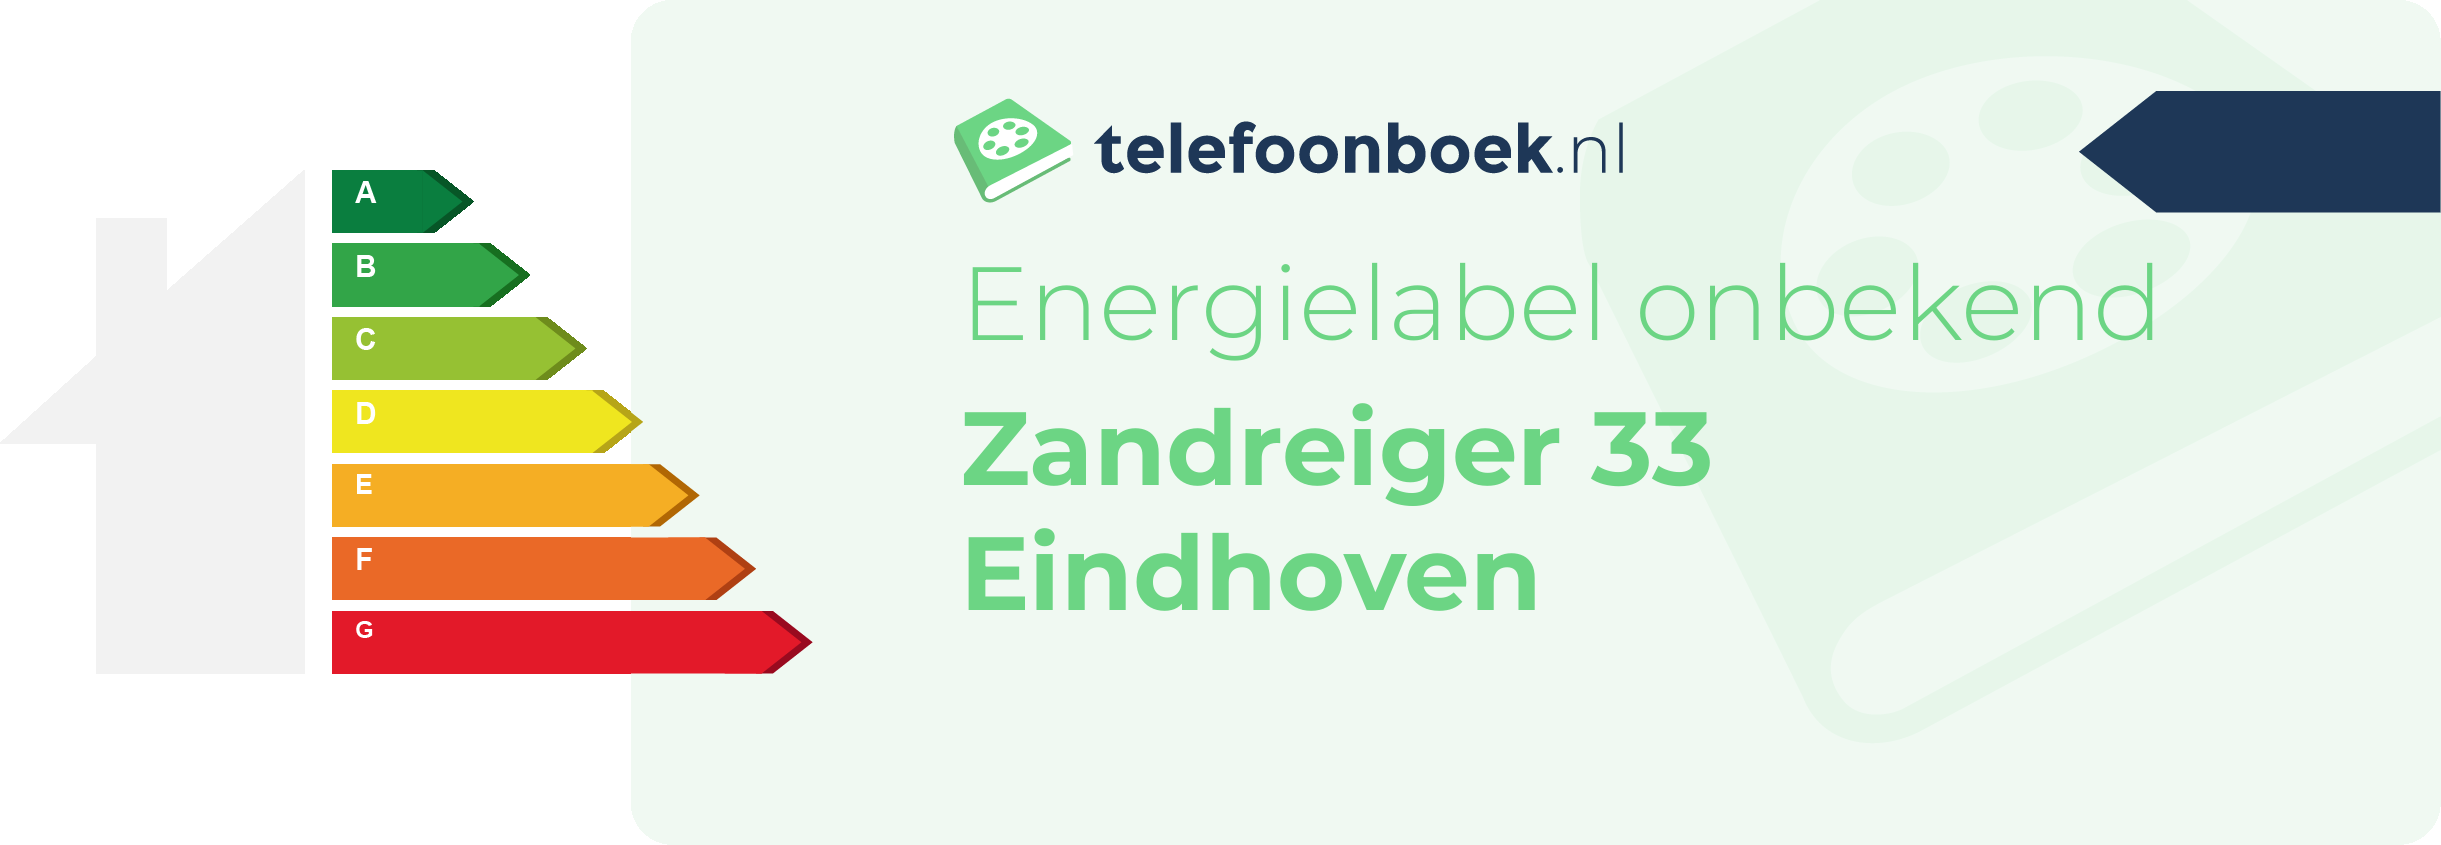 Energielabel Zandreiger 33 Eindhoven